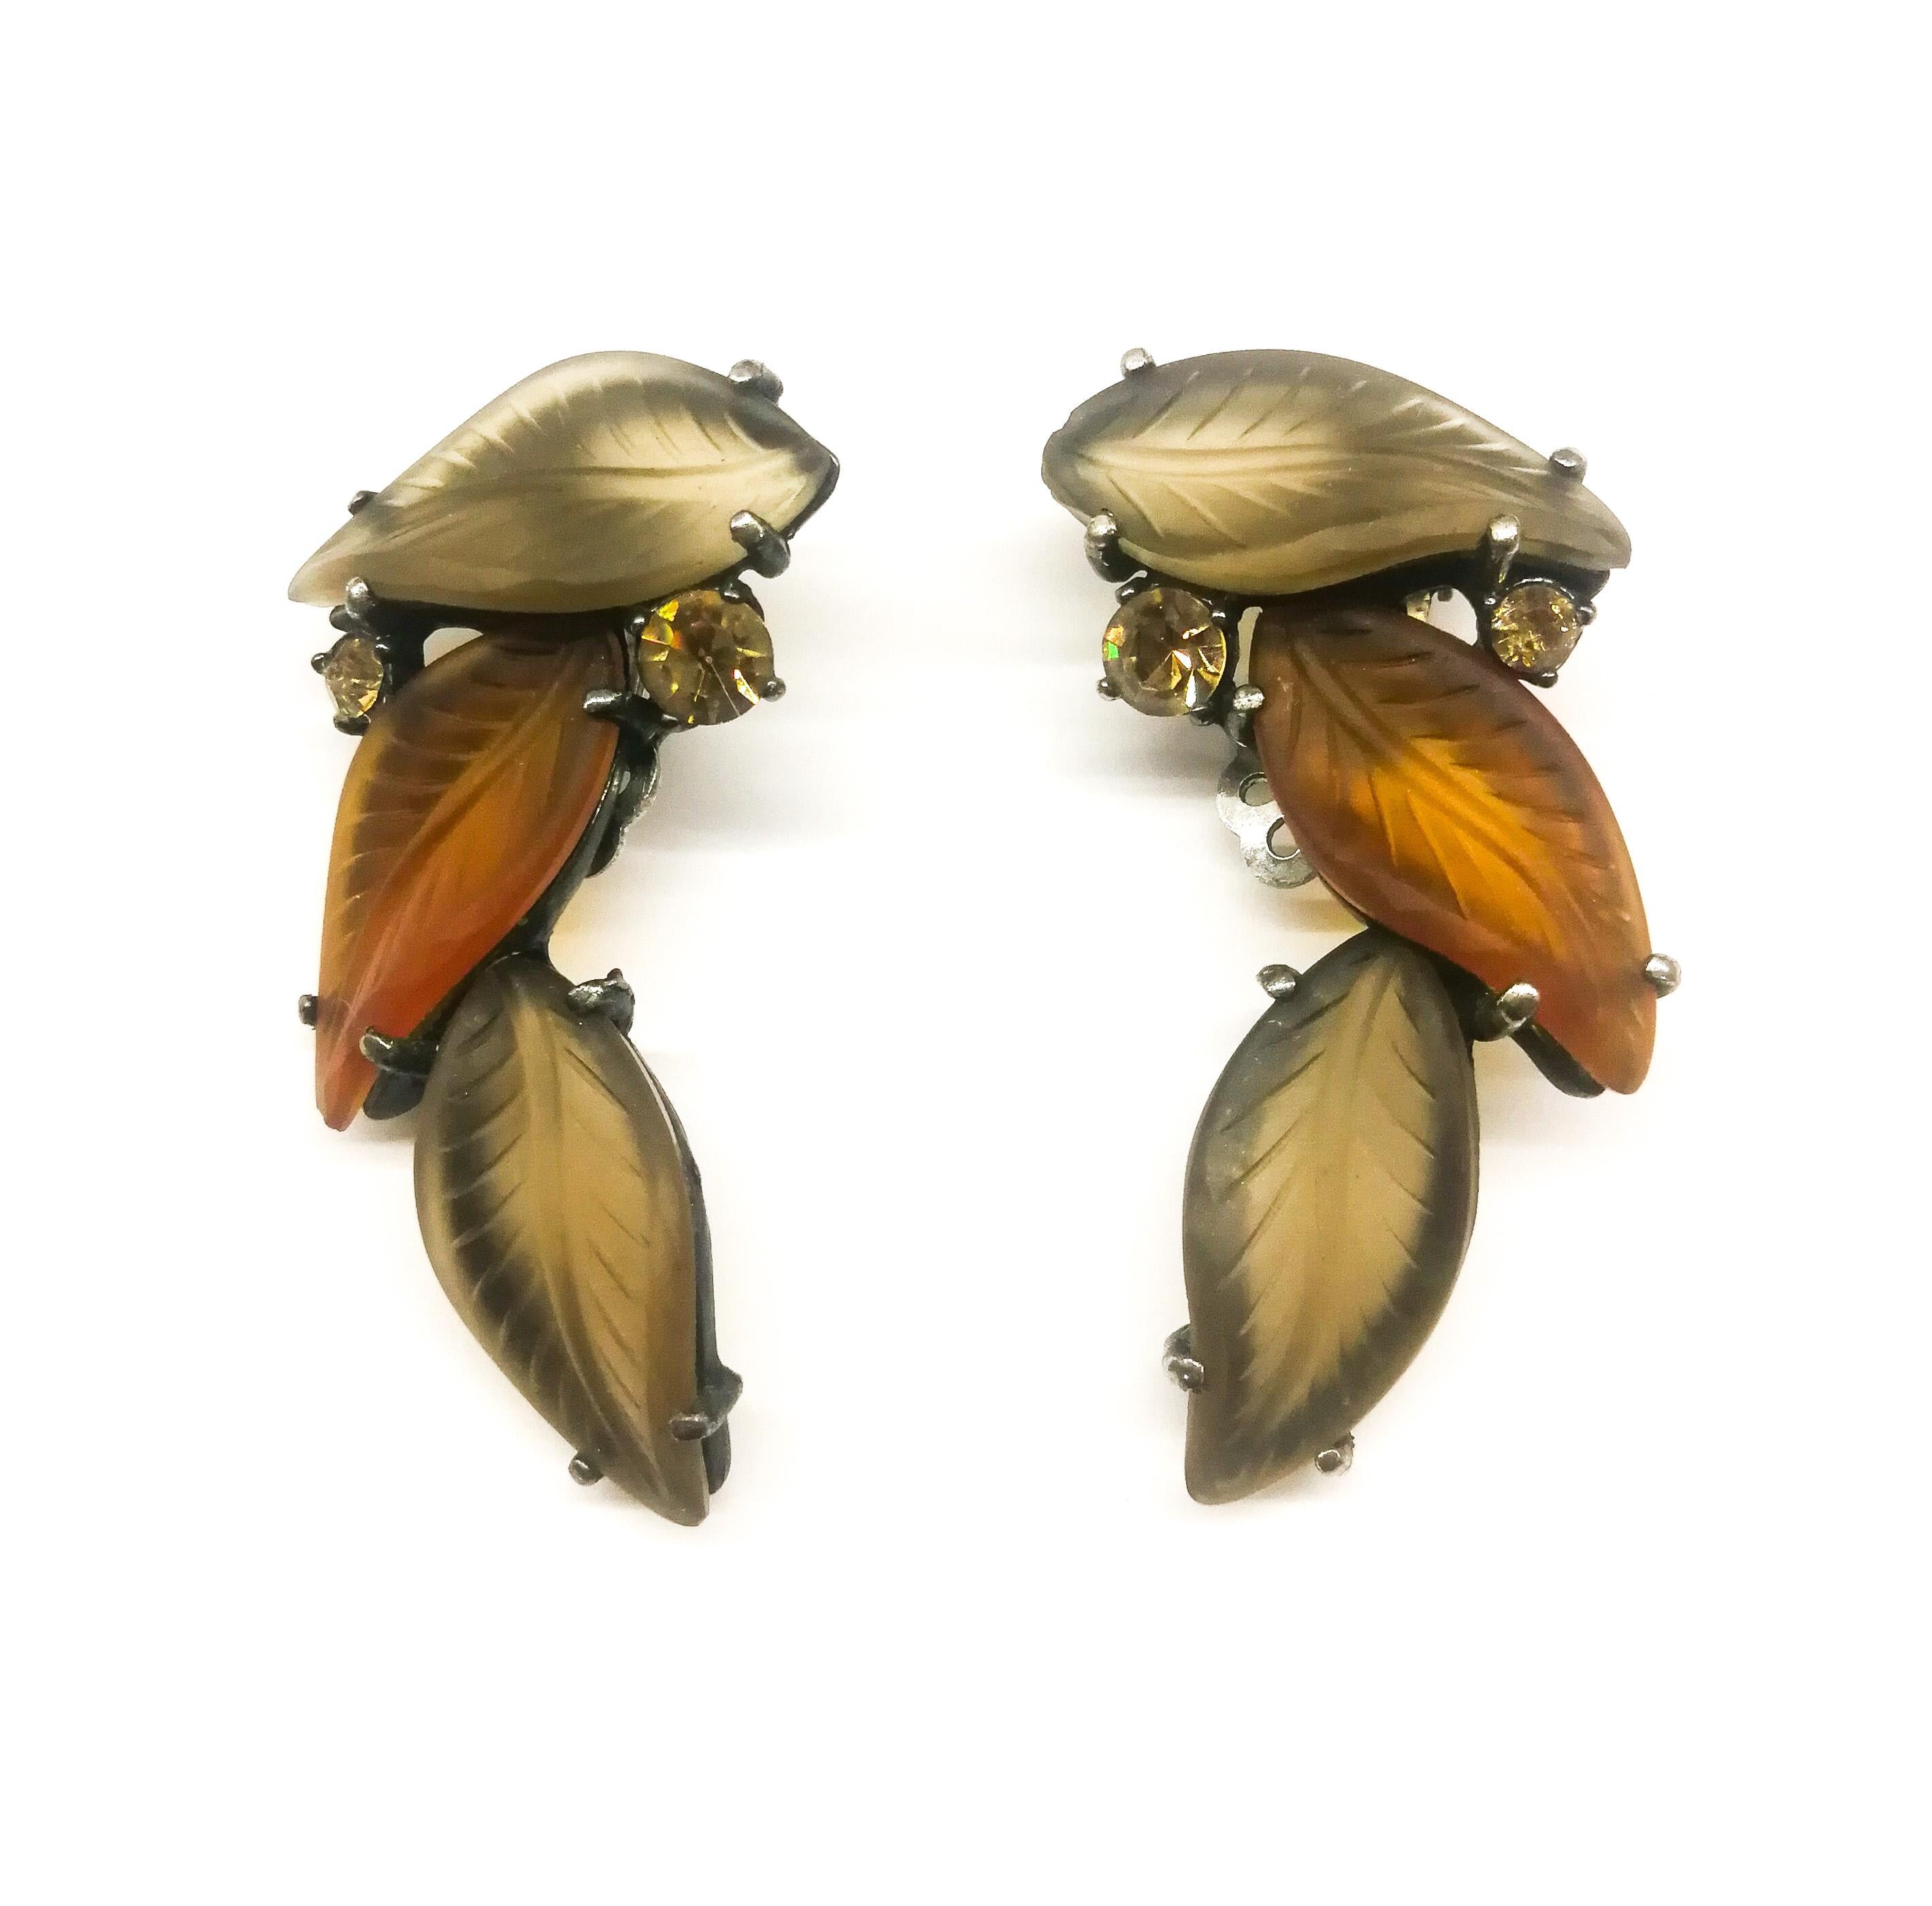 Diese prächtigen Ohrringe stammen aus der späteren Periode des Schiaparelli-Designs in den 1950er Jahren, gehören aber zu ihren auffälligsten und elegantesten Kreationen. Sie erinnern an Lalique-Glas in sanften, warmen Brauntönen und sitzen